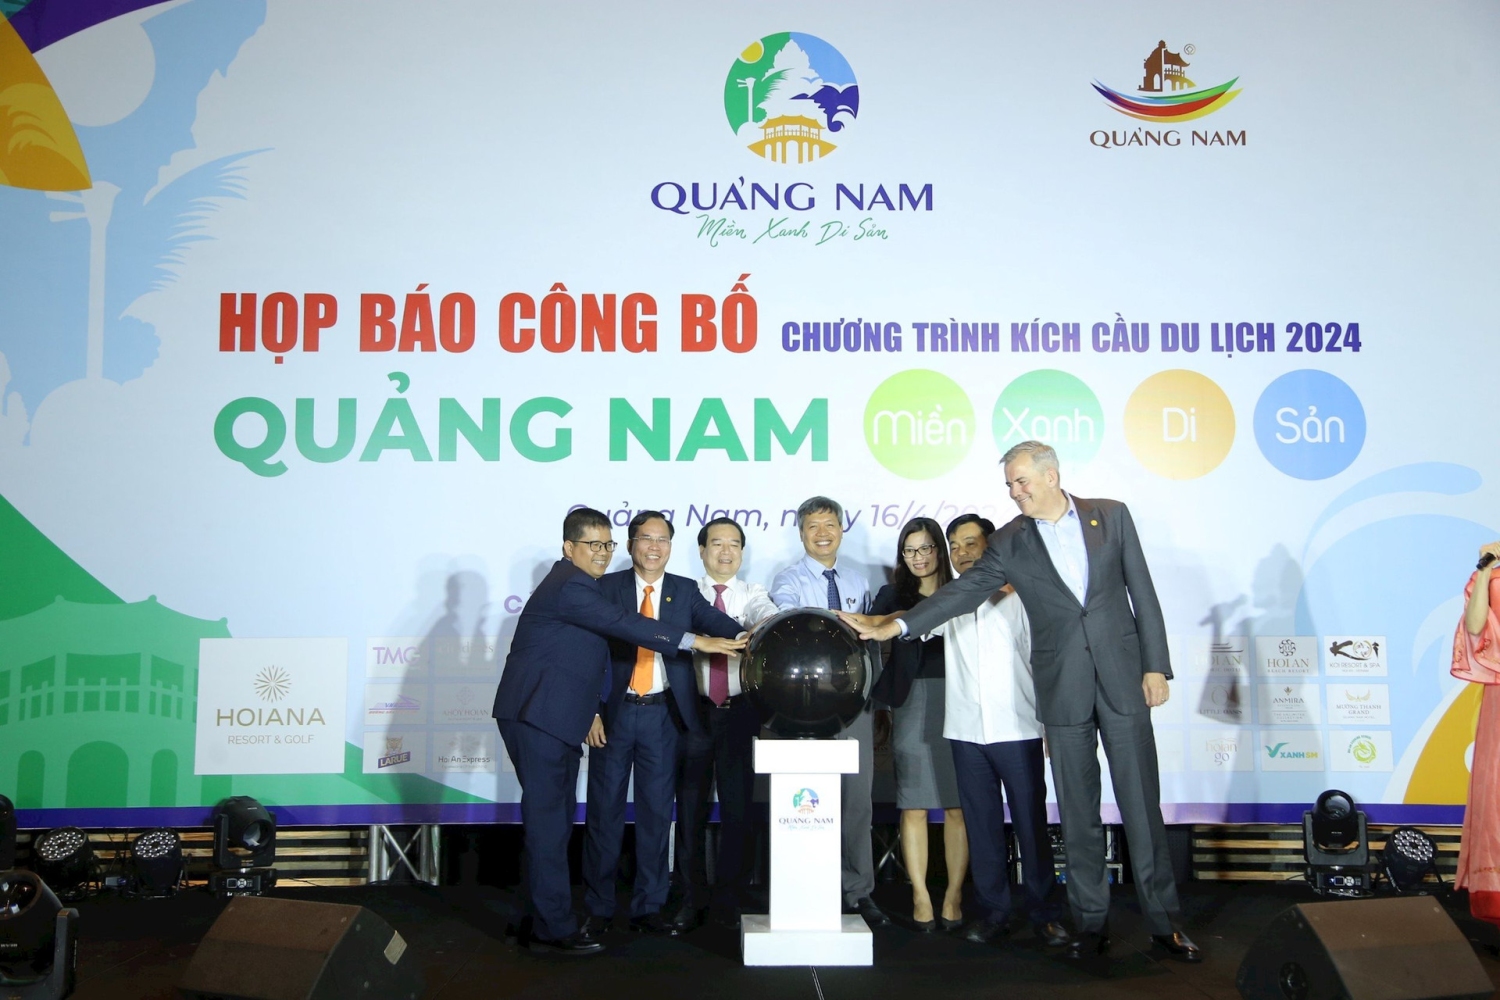 Các đại biểu thực hiện bấm nút công bố chương trình kích cầu thu hút khách du lịch 2024 của tỉnh Quảng Nam